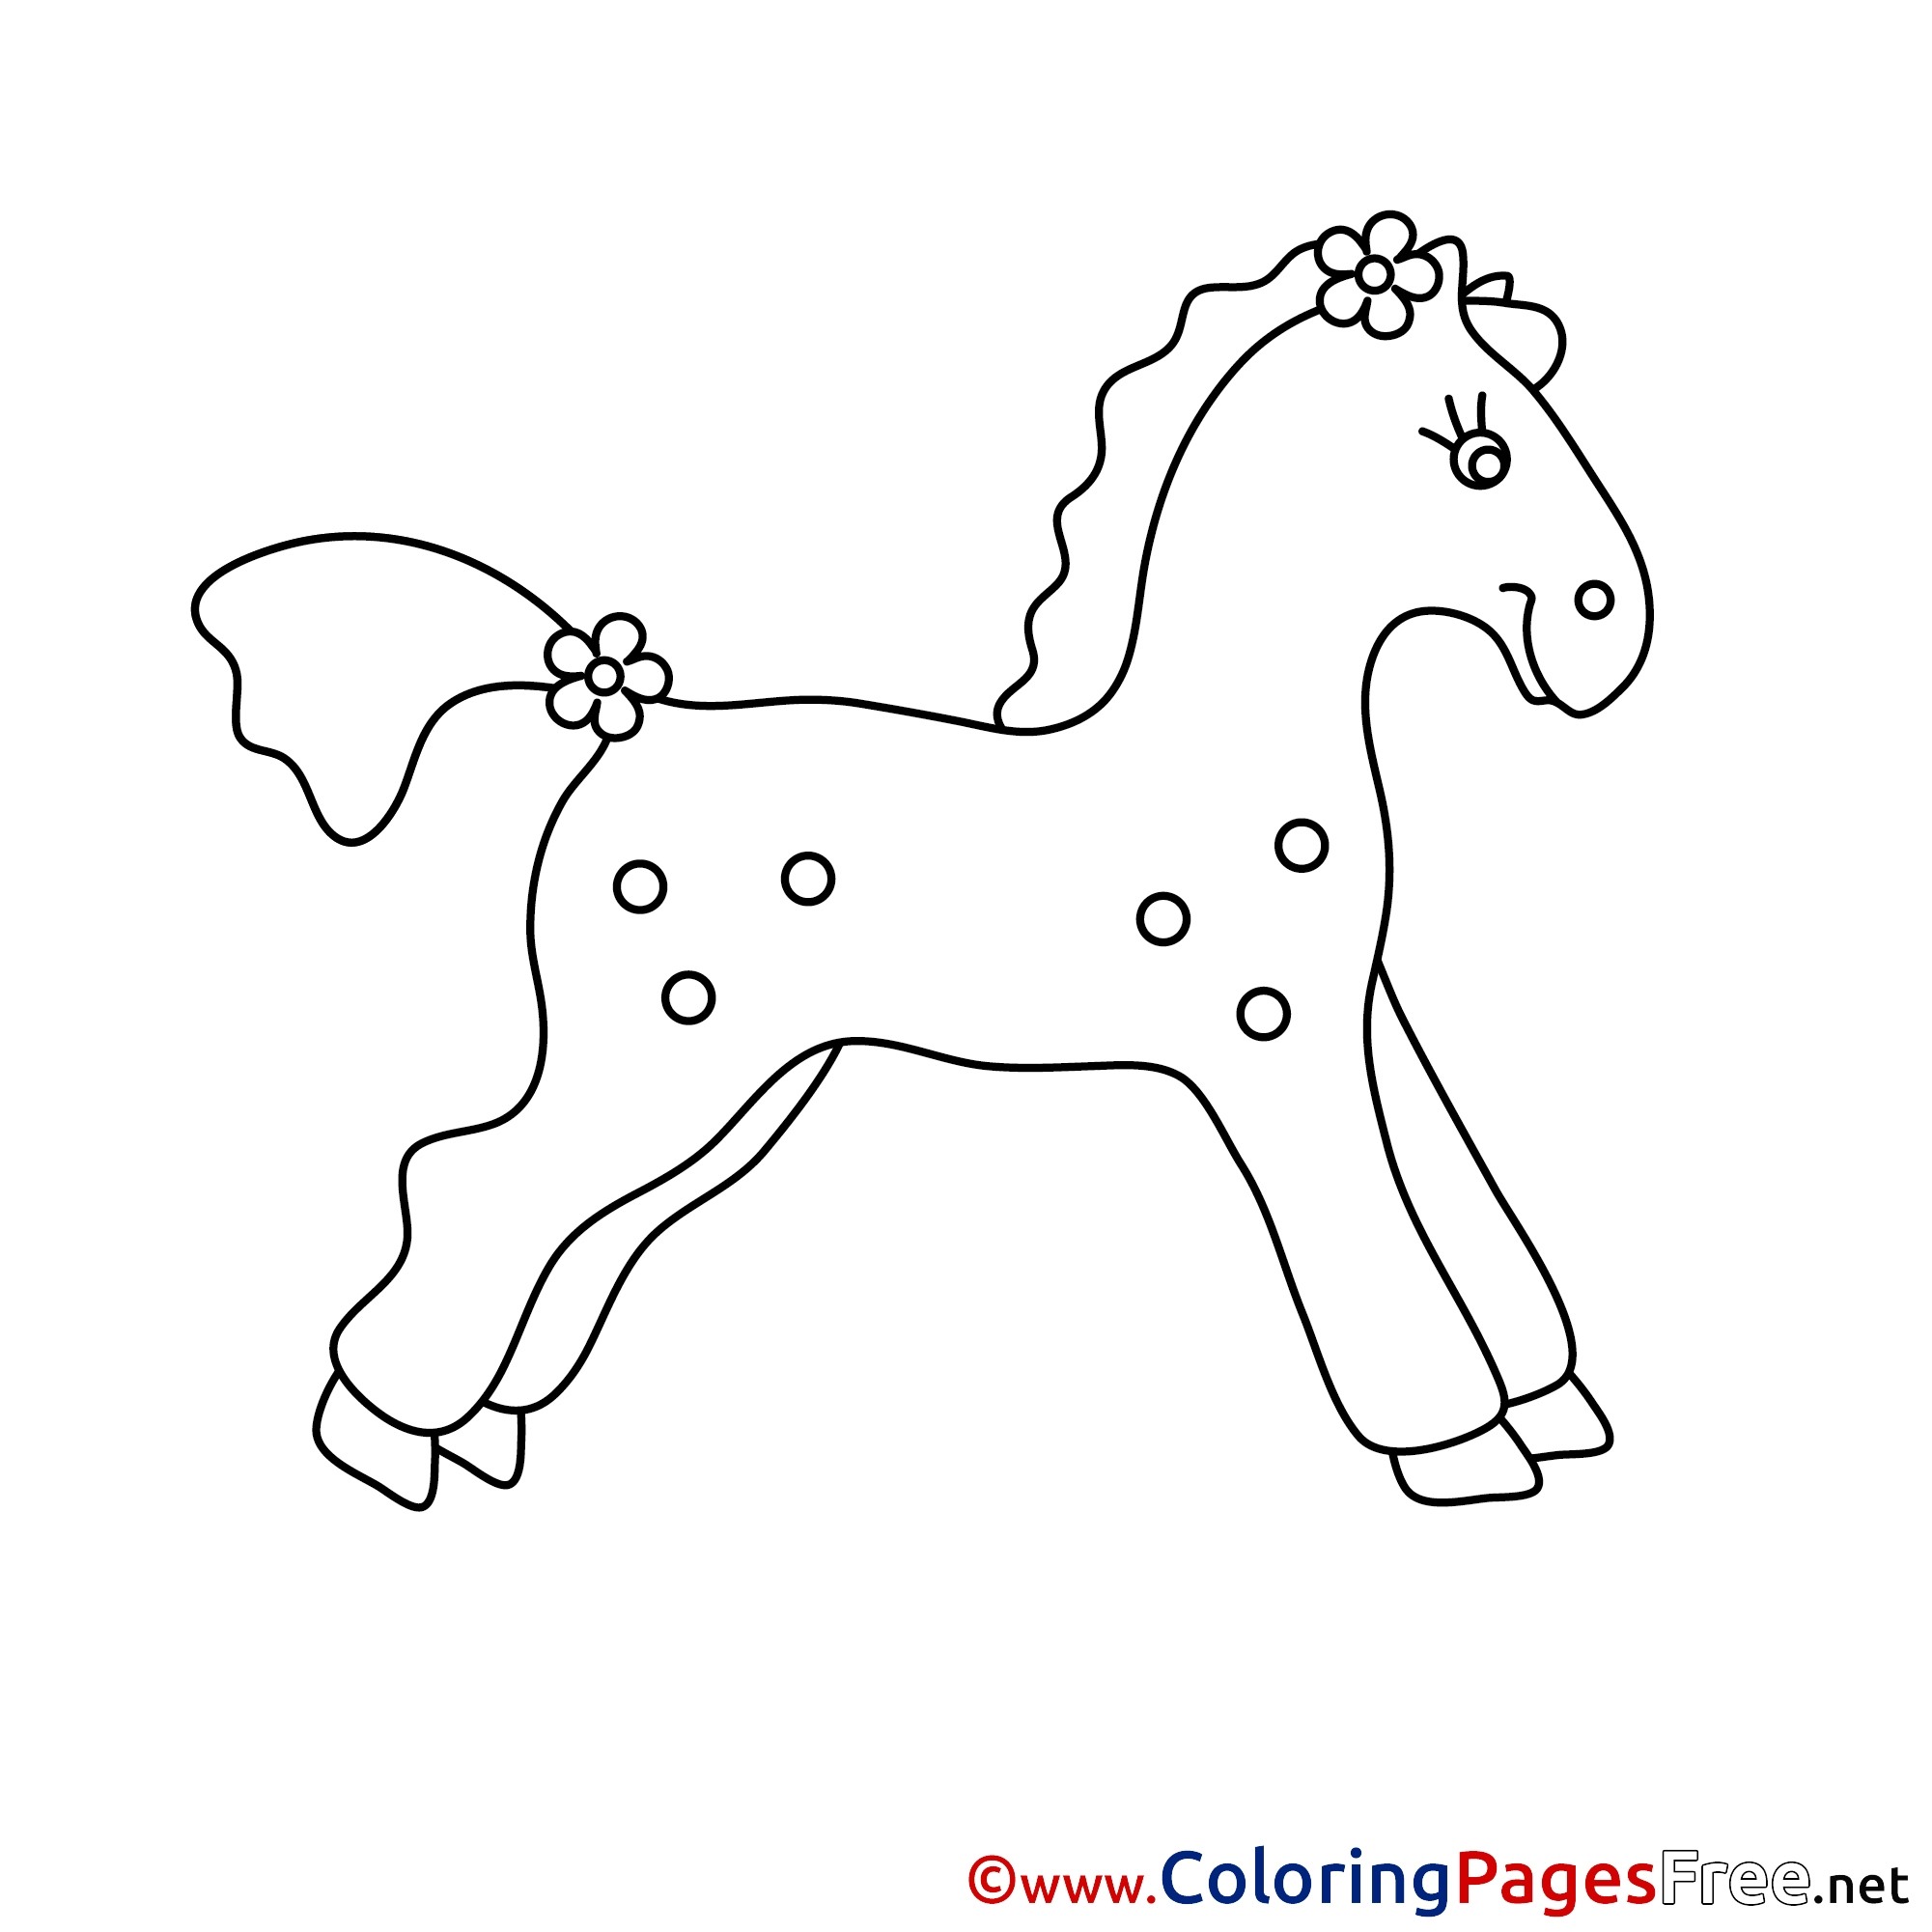 Конь с розовой гривой распечатать. Трафарет лошадки для детей. Лошадка раскраска для малышей. Лошадка игрушка раскраска. Трафарет лошадки для вырезания.